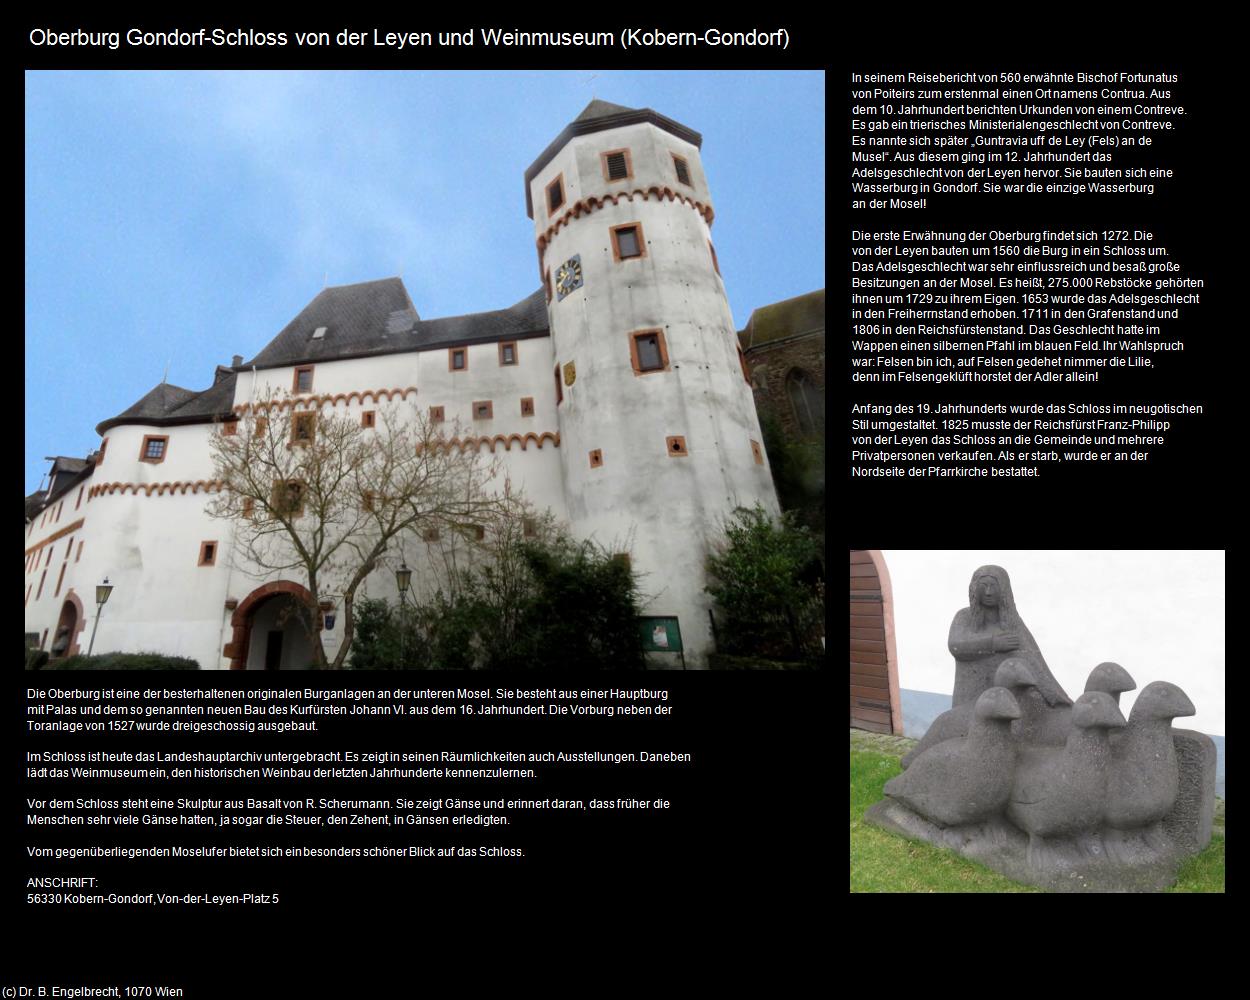 Oberburg Gondorf-Schloss von der Leyen und Weinmuseum (Kobern-Gondorf (DEU-RP)) in RHEINLAND-PFALZ und SAARLAND